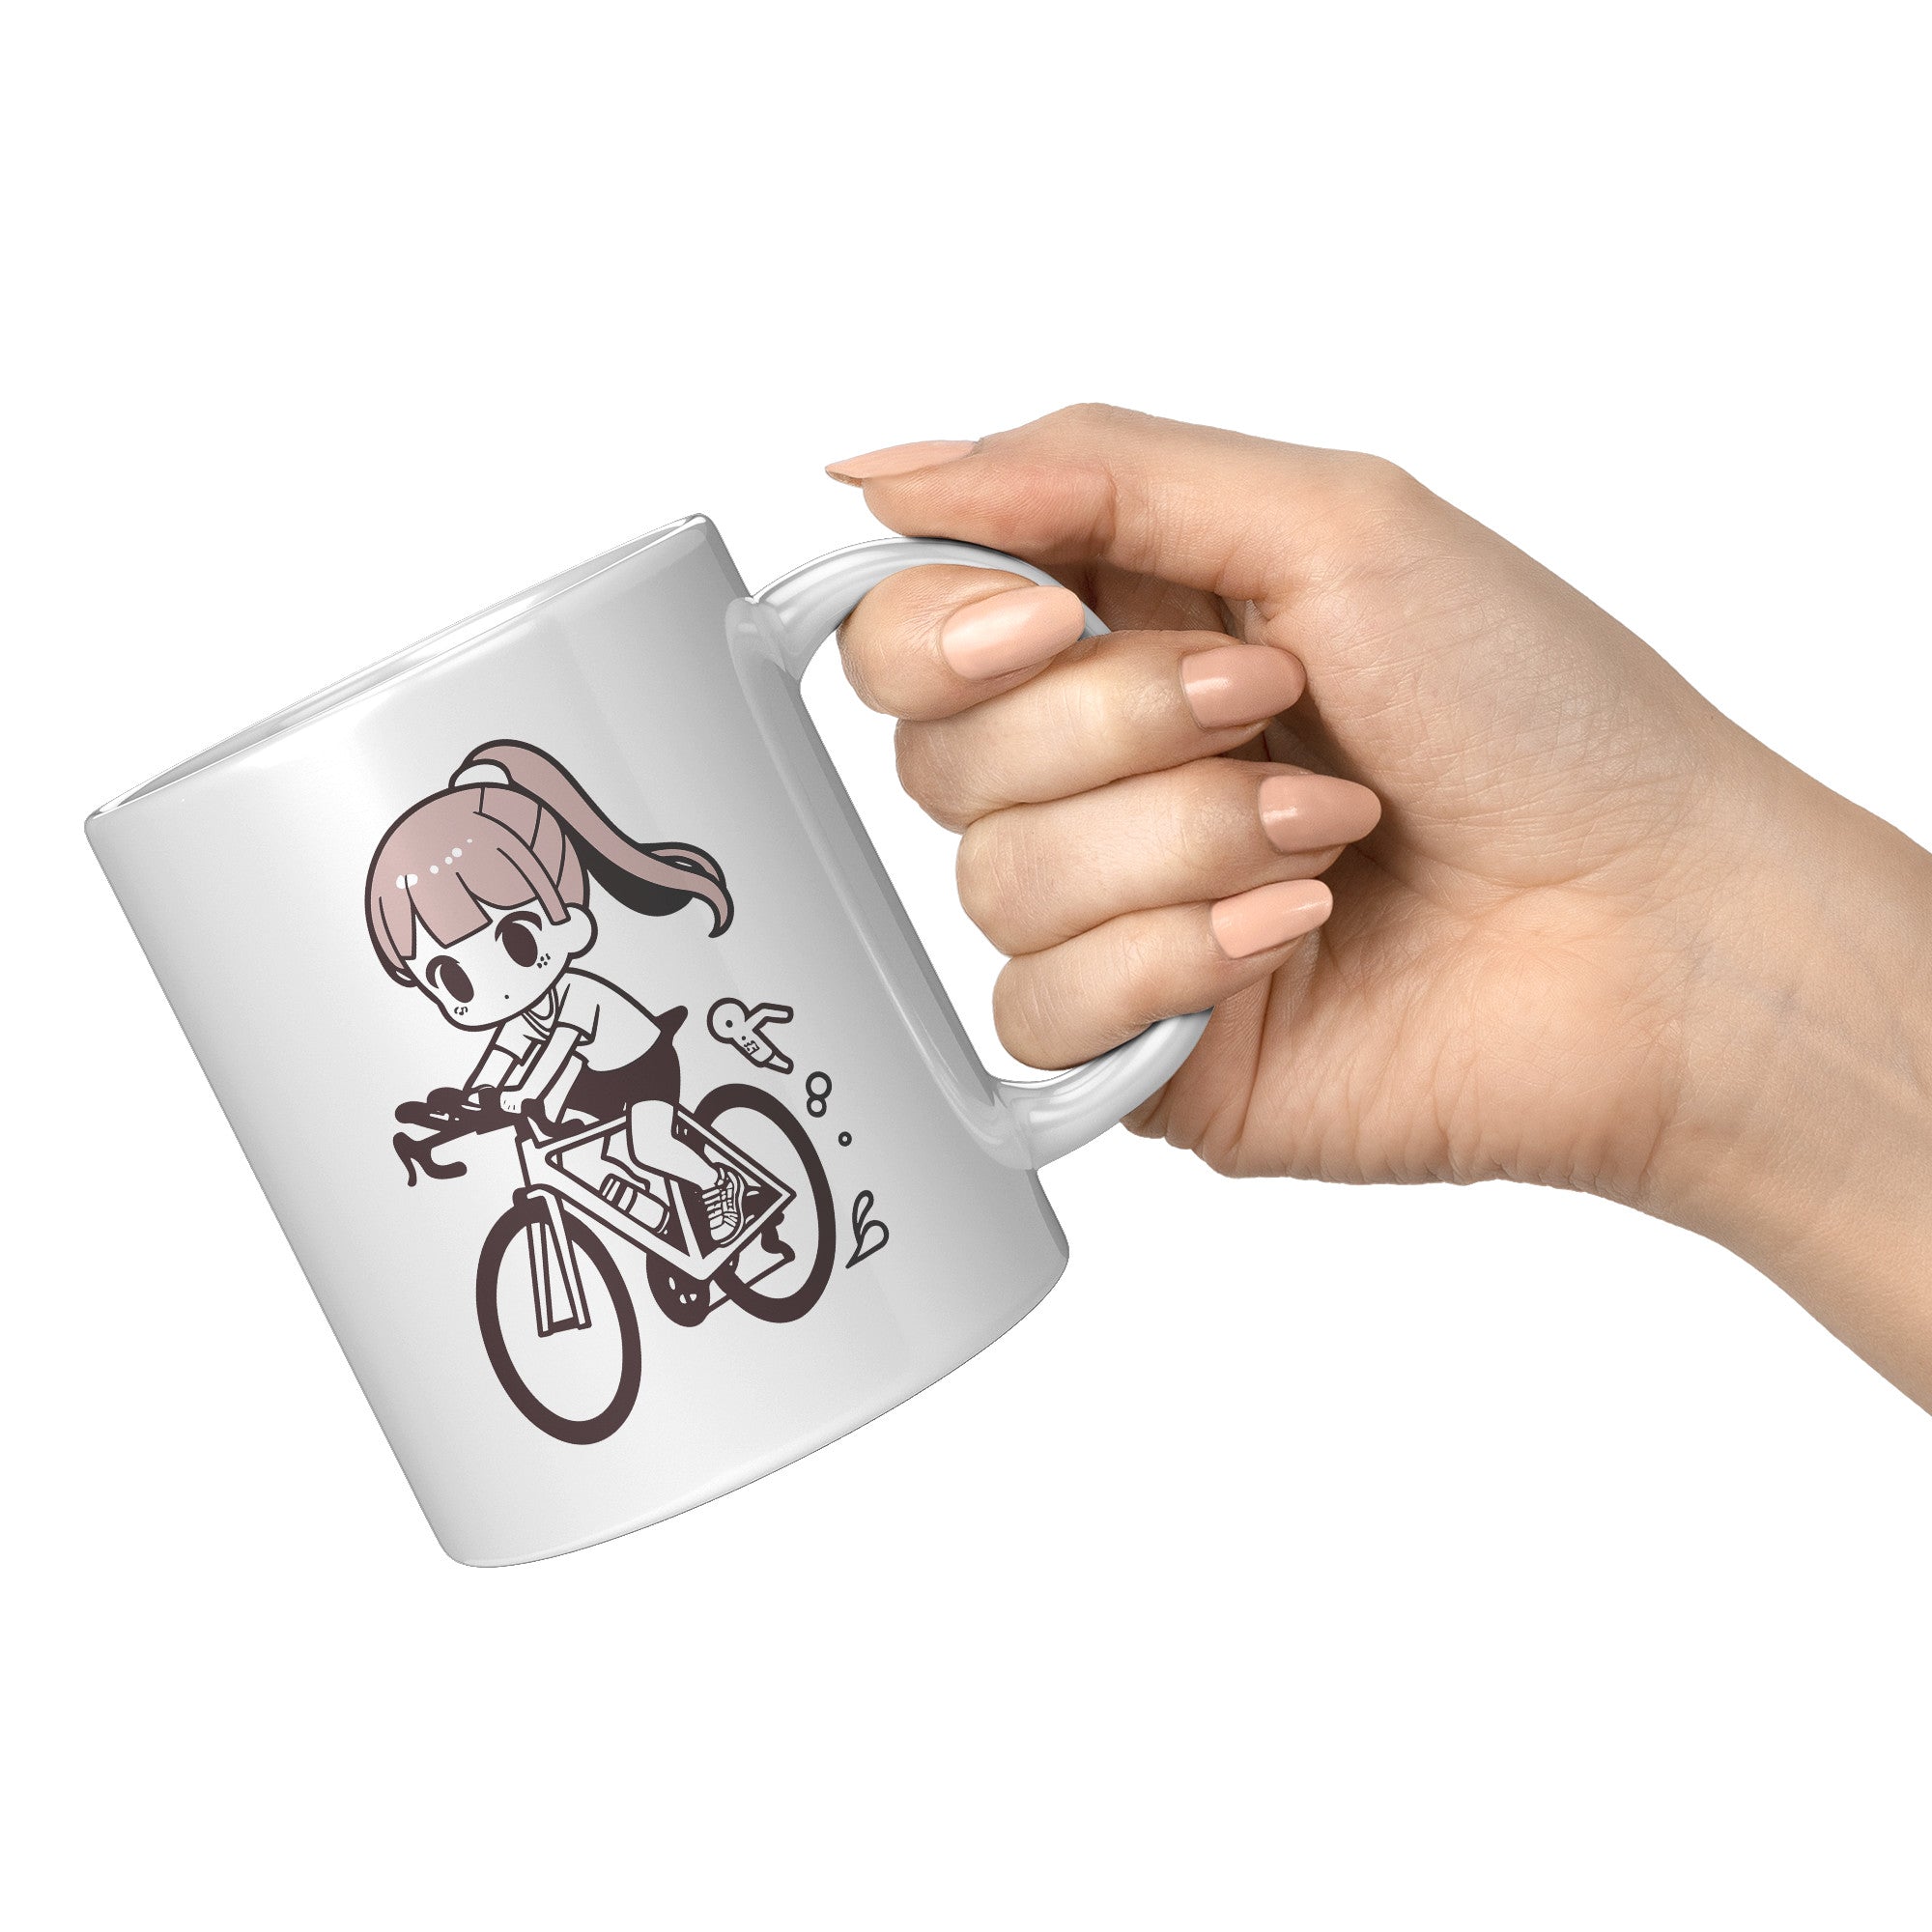 "Funko Pop Triathlon Athlete Coffee Mug - Multisport Morning Brew Cup - Ideal Gift for Triathletes - Swim, Bike, Run Inspired Mug" - N